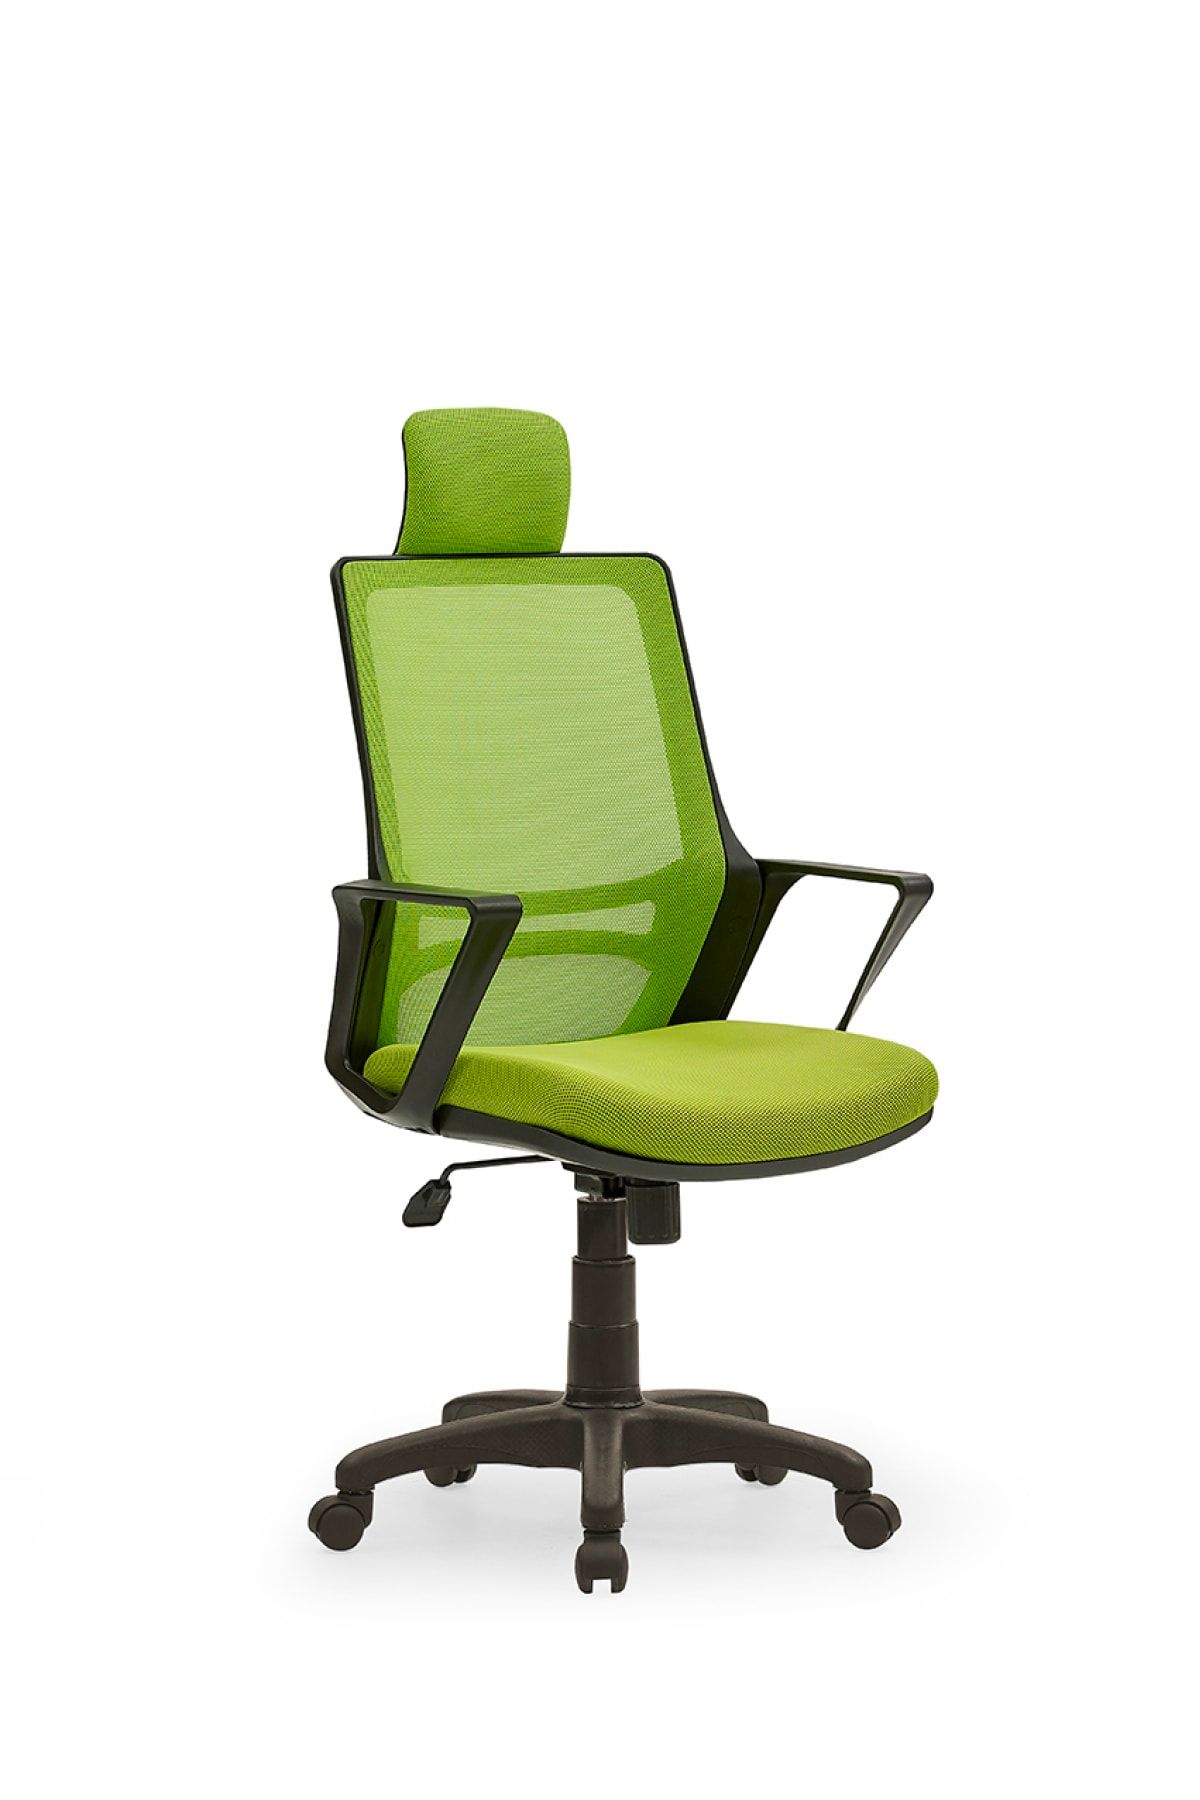 MEHMET YAREN BURO Arya3 Bilgisayar Koltuğu - Ofis - Müdür - Büro - Çalışma Sandalyesi Yeşil Renk Plastik Ayaklı